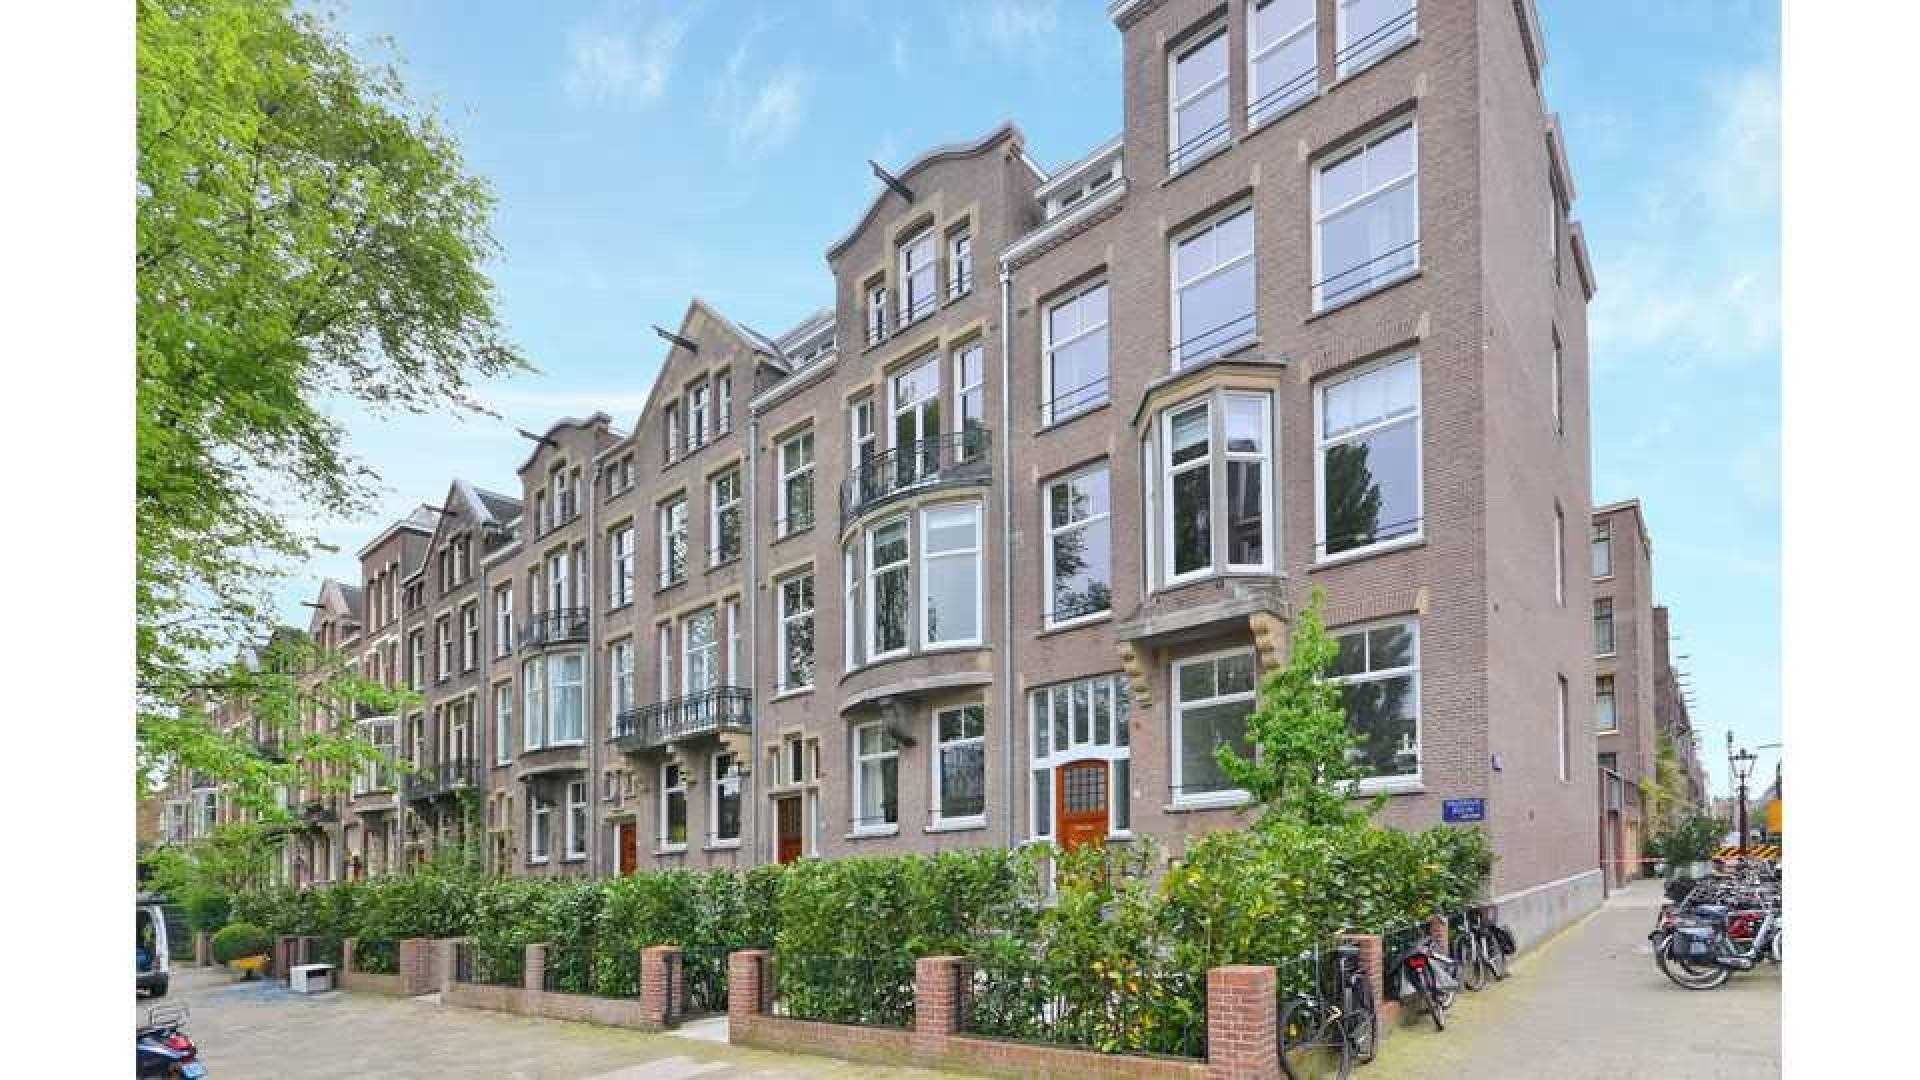 Hart van Nederland presentatrice Gallyon van Vessem verkoopt haar pand In Amsterdam Zuid in recordtijd. Zie foto's